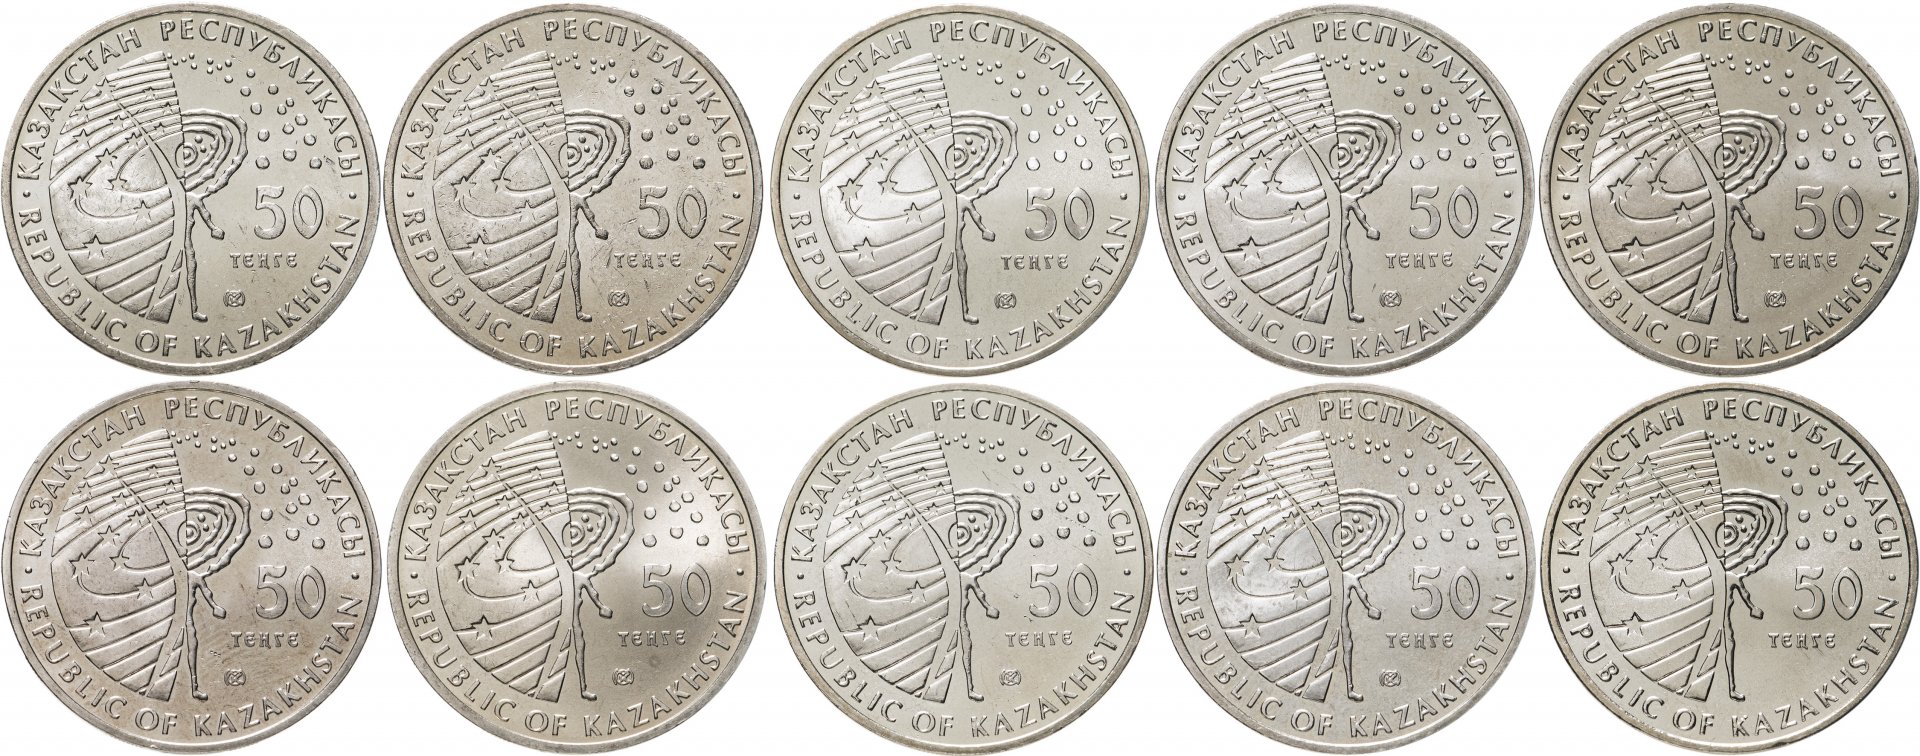 5300 тенге в рублях. Казахстан - 50 тенге (2006 г.). Монеты 50 тенге 2020 года. Казахстан набор монет Сакский стиль.